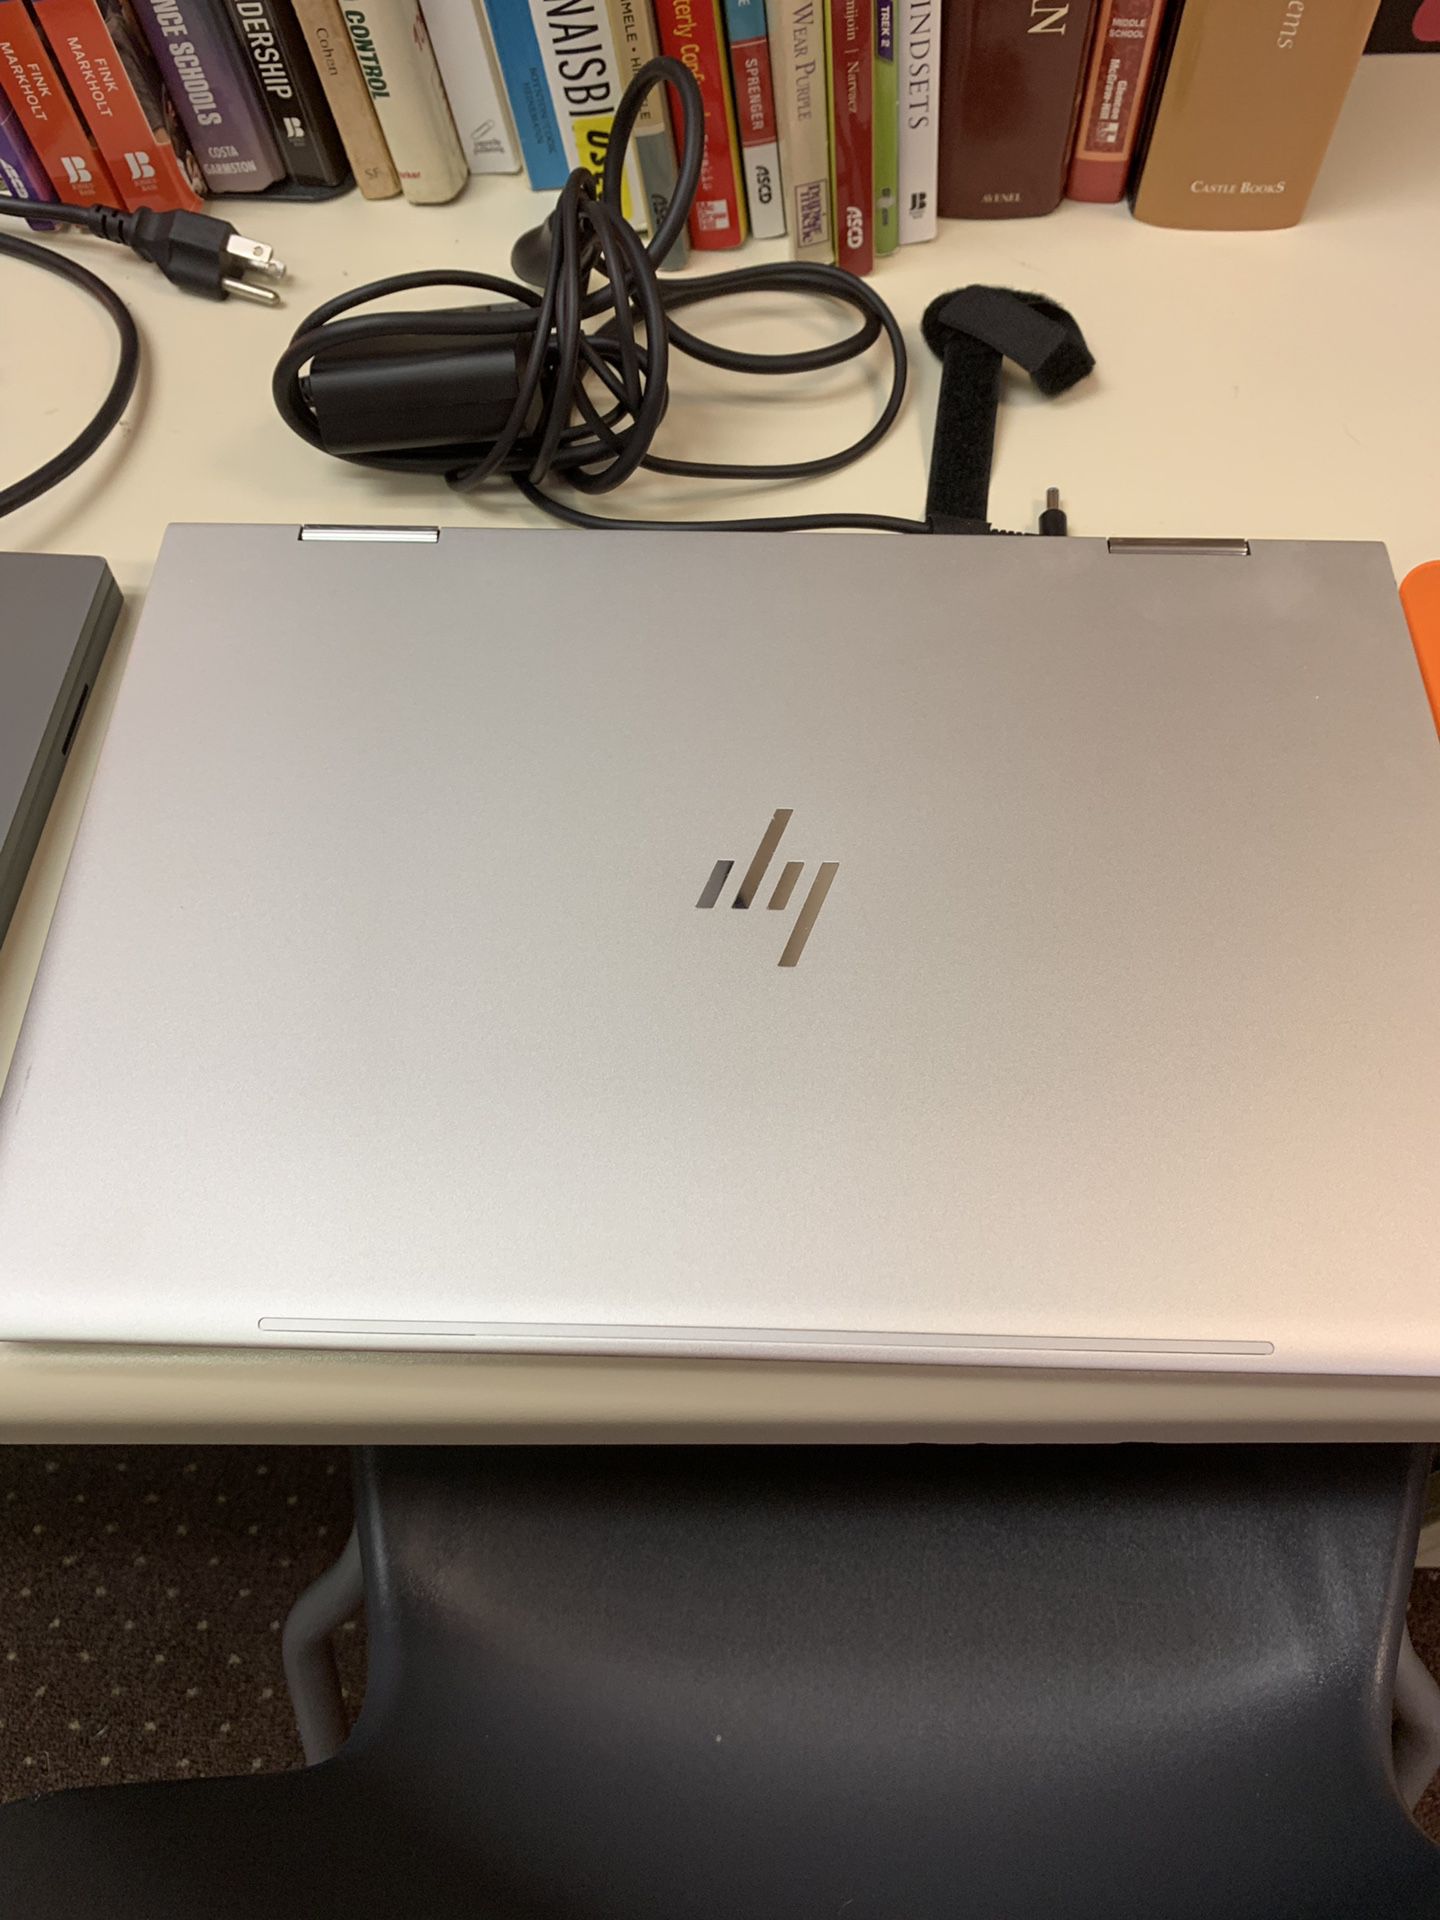 HP Envy Laptop